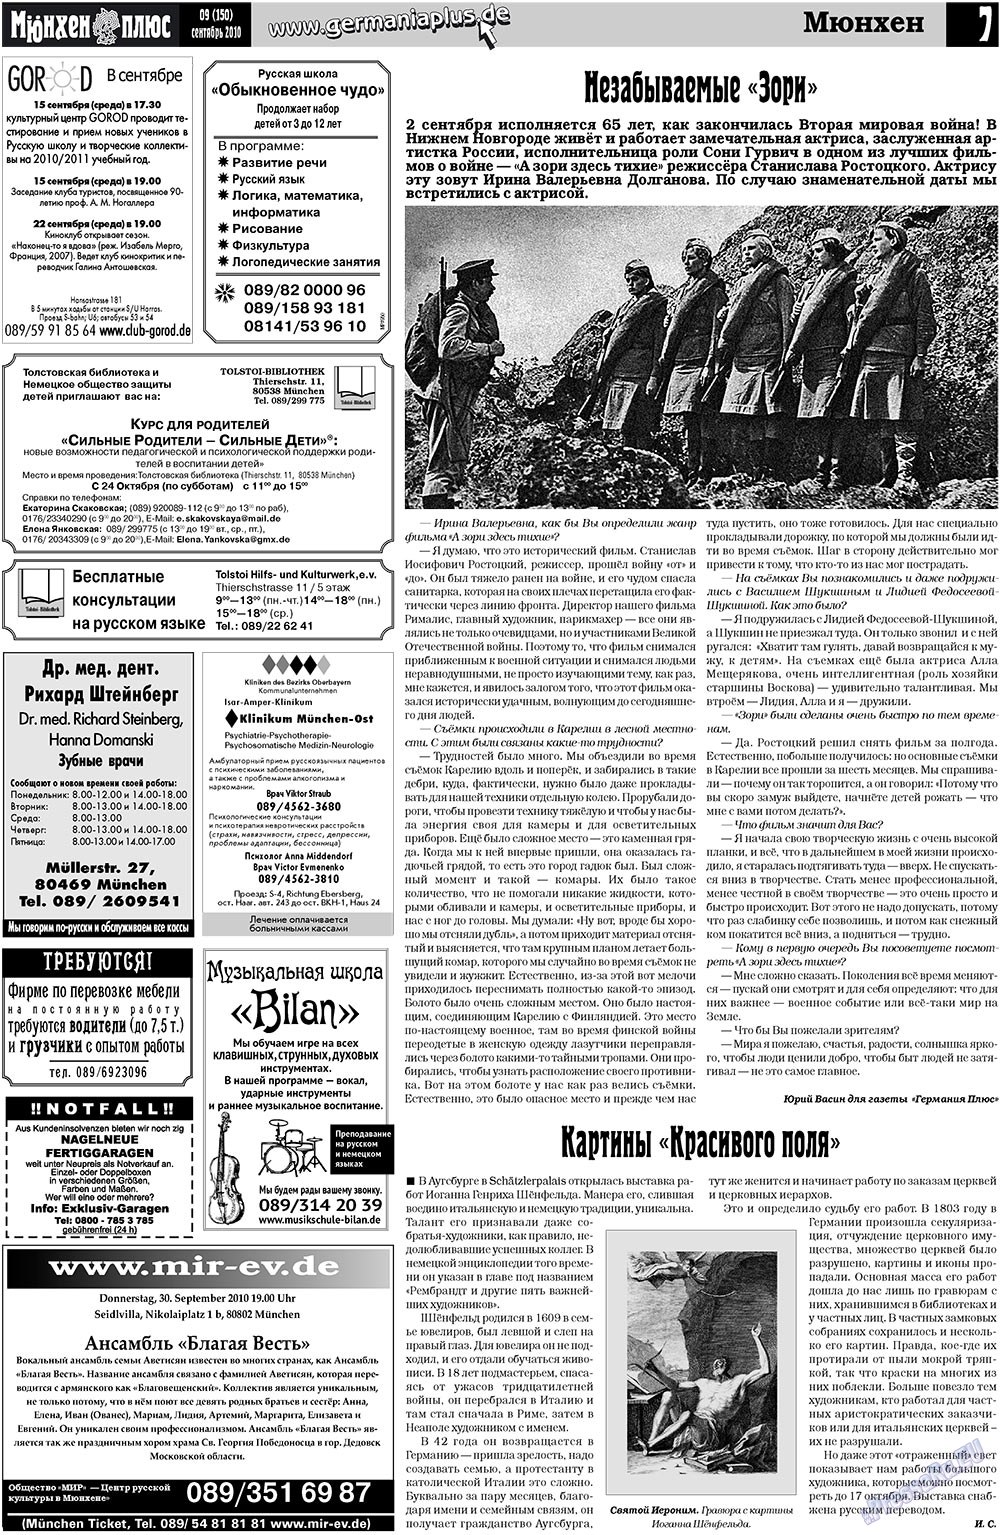 Германия плюс (газета). 2010 год, номер 9, стр. 23